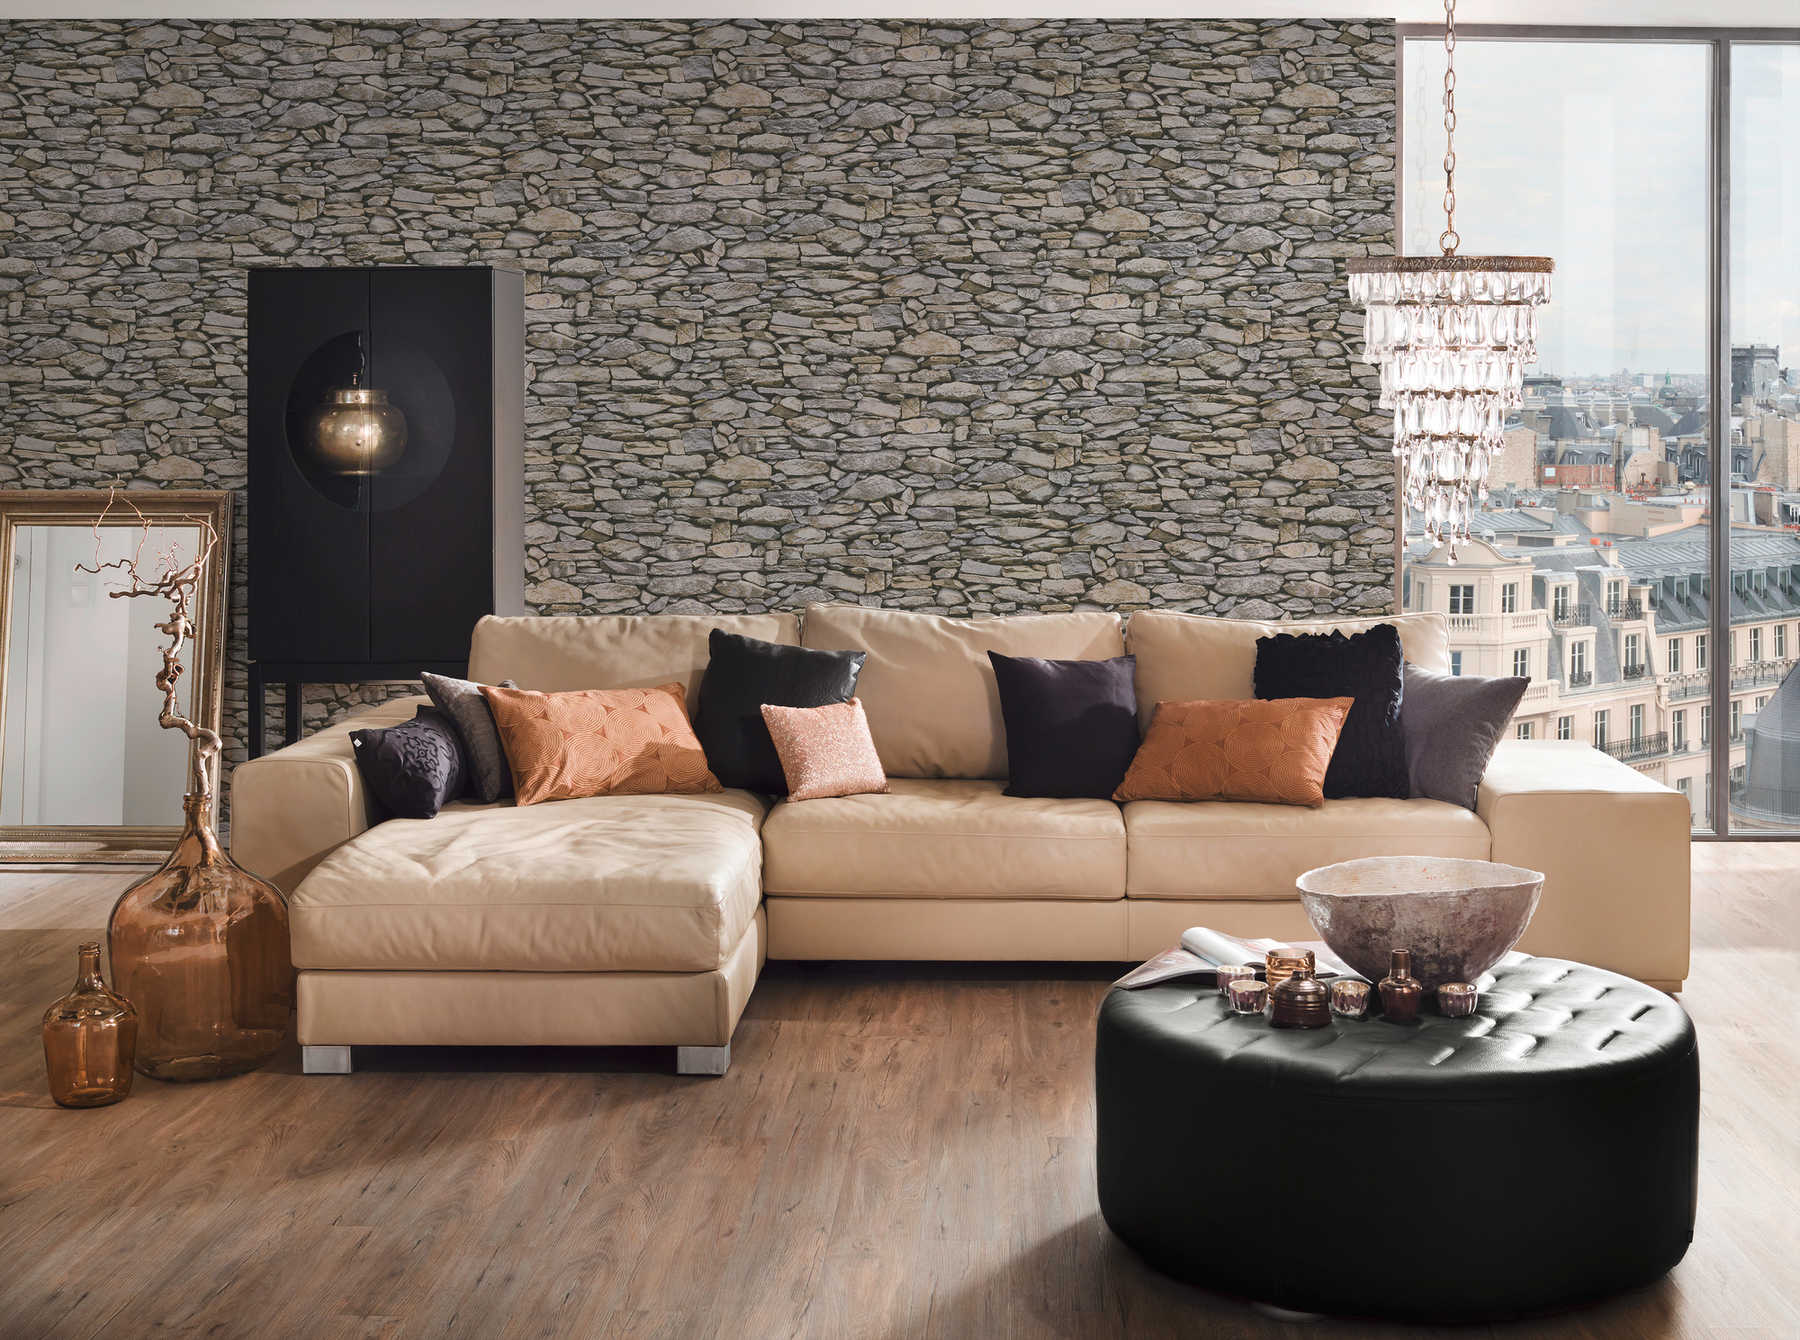             Stone pattern wallpaper, realistic wall look - beige, grey
        